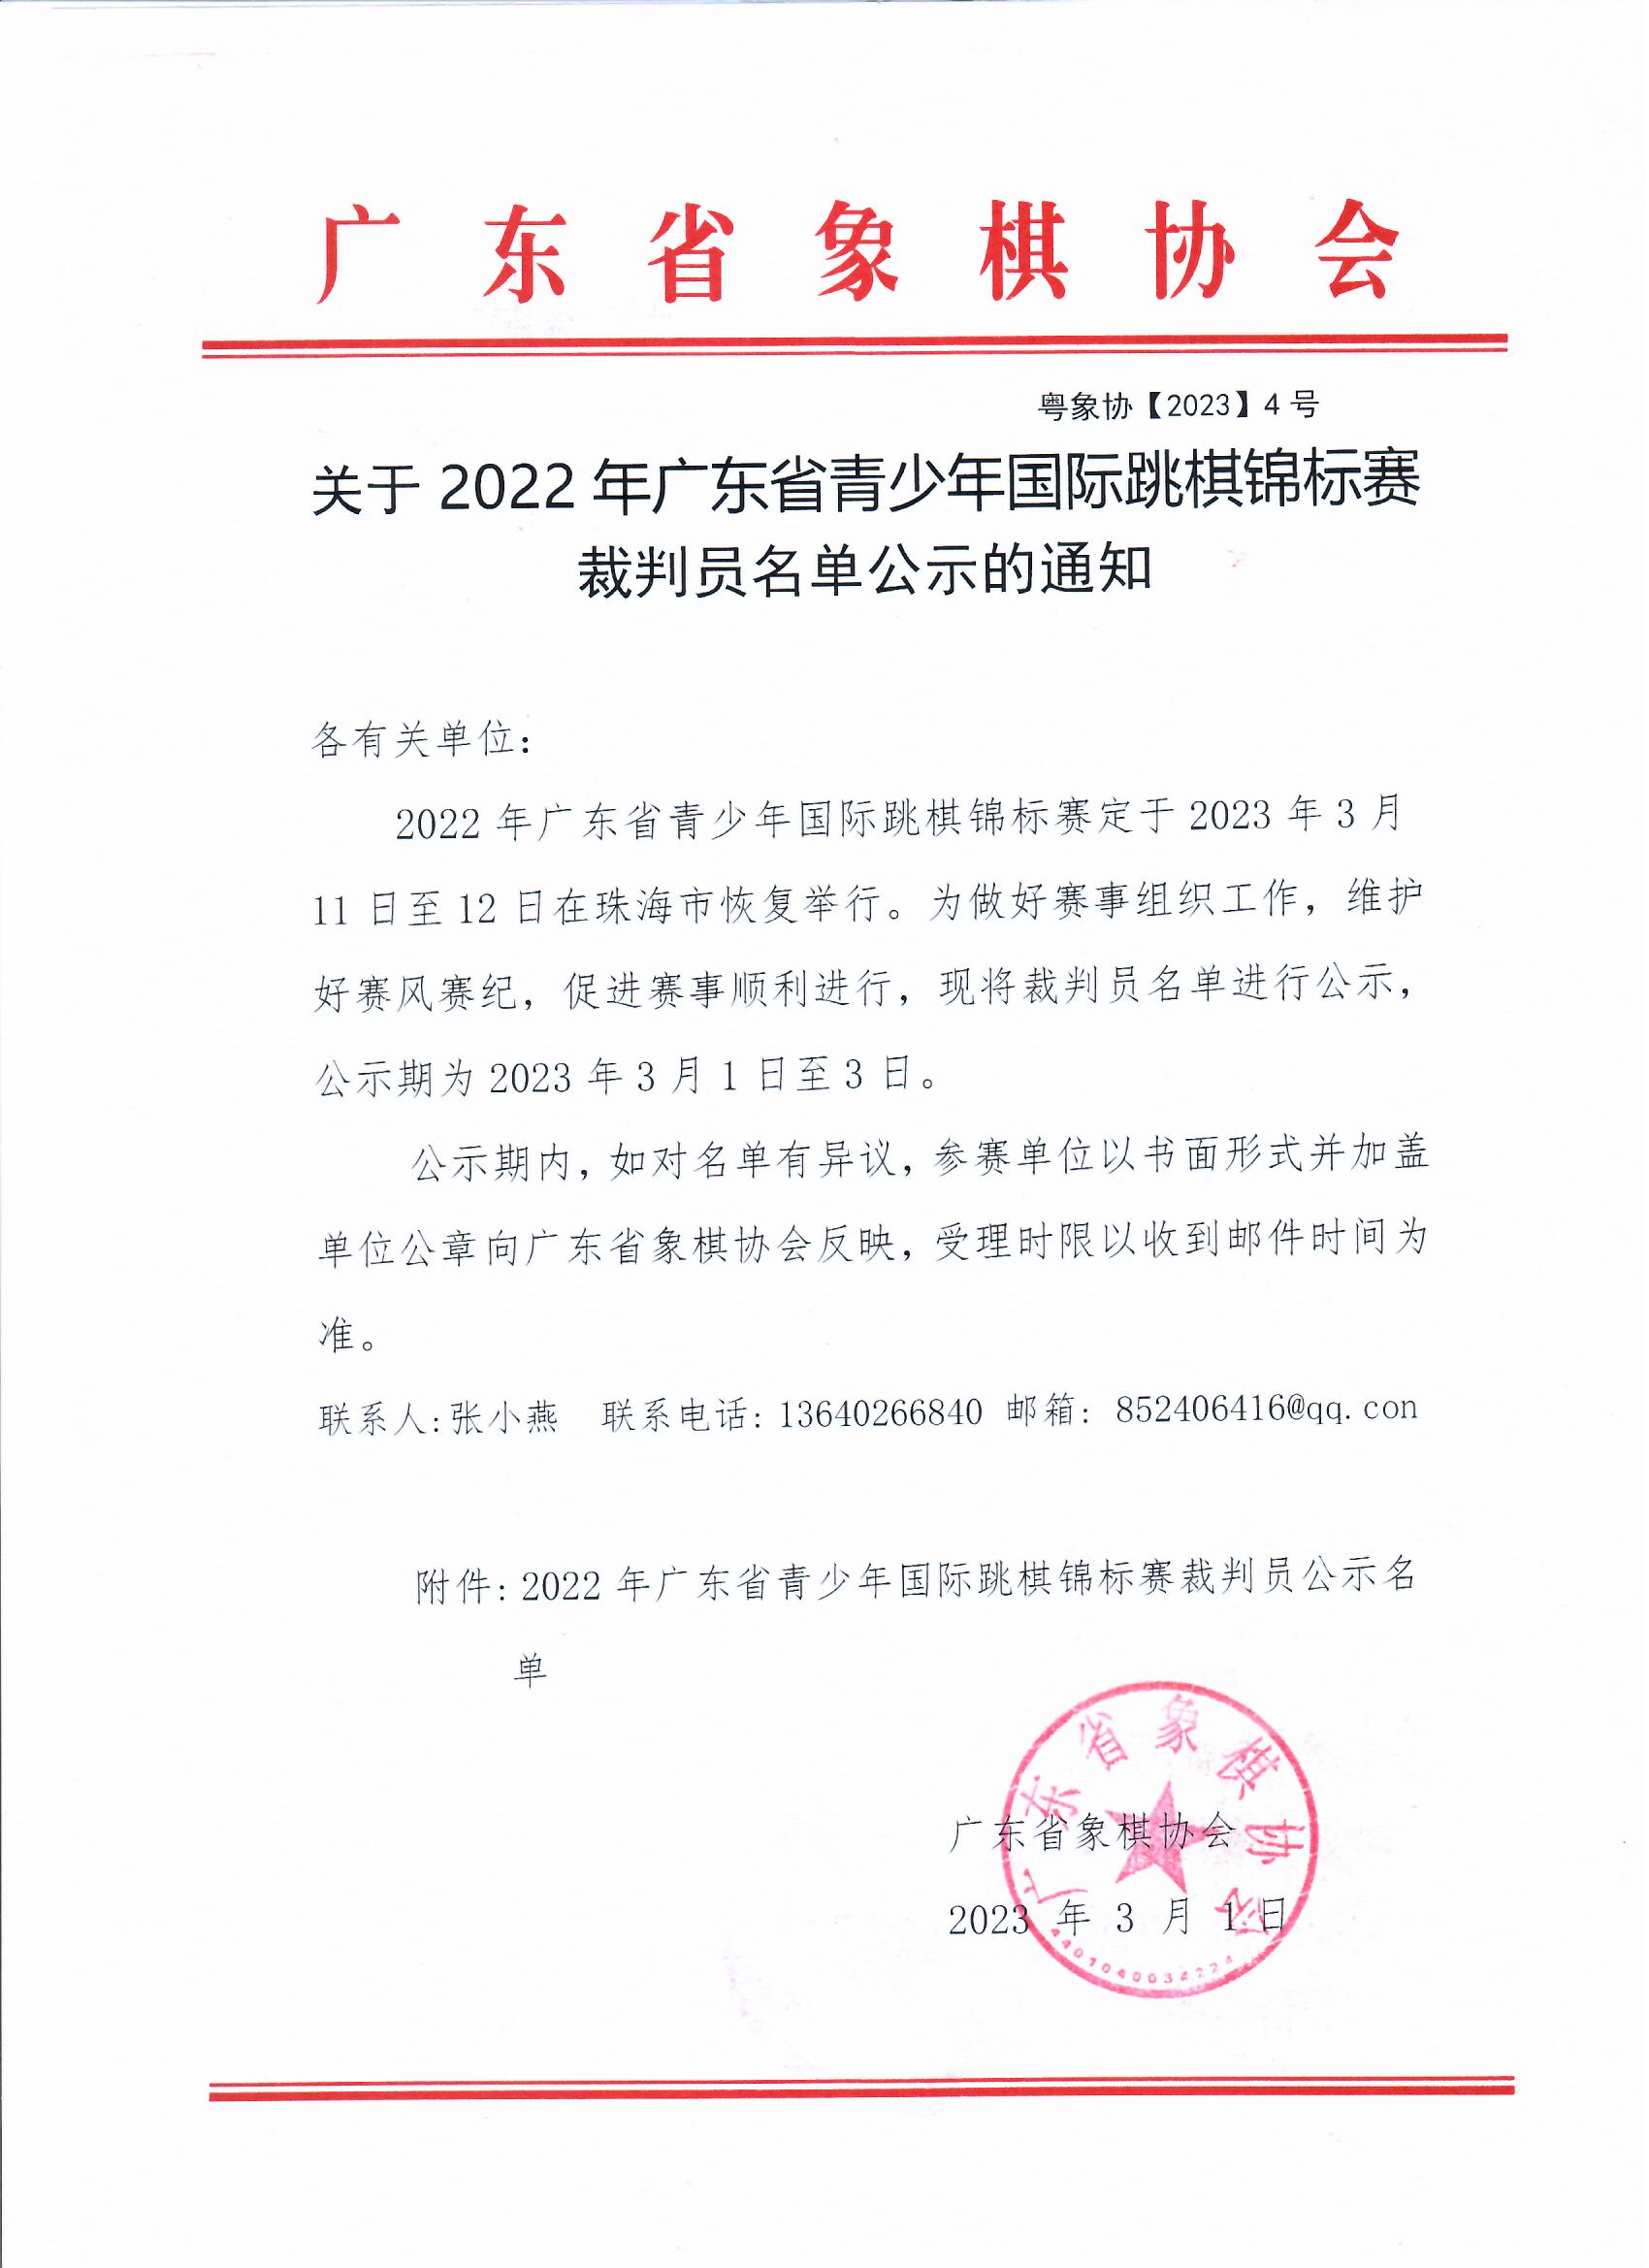 关于2022年广东省青少年国际跳棋锦标赛裁判员名单公示的通知